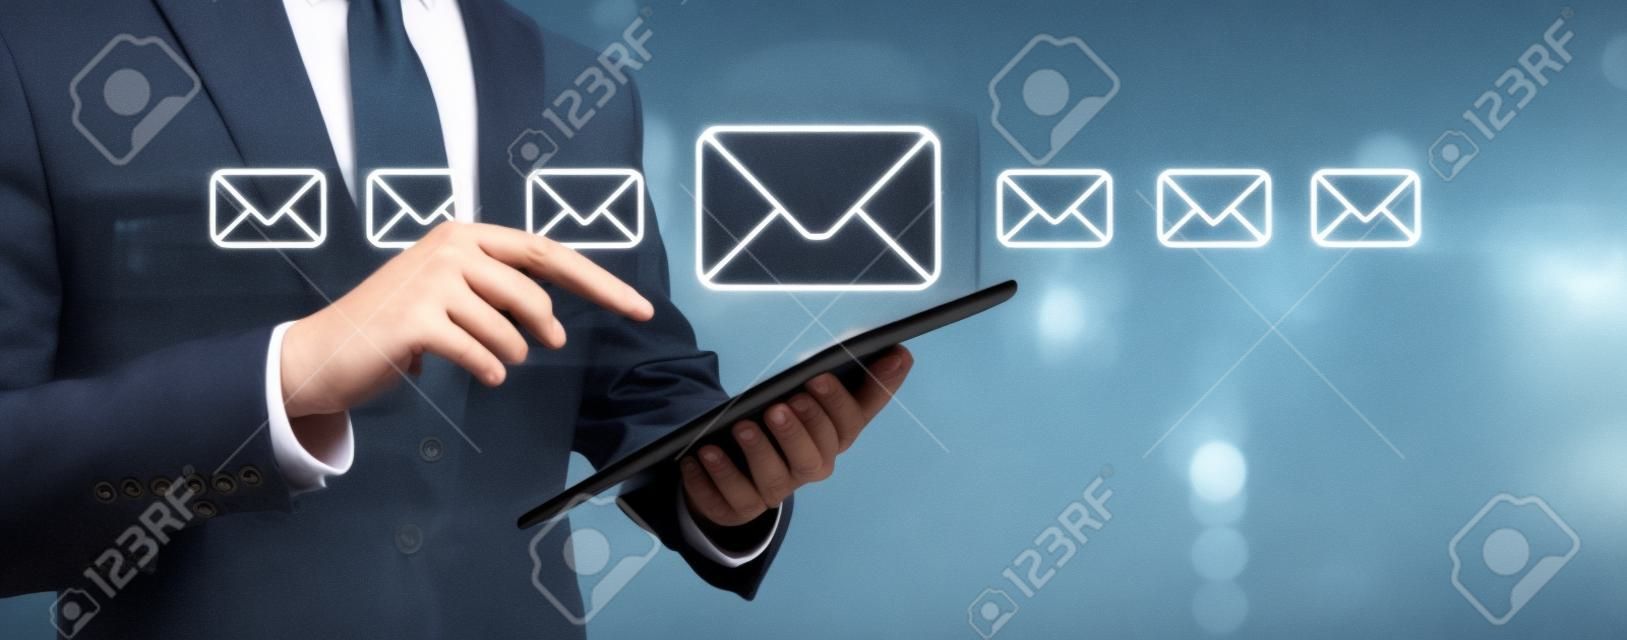 Koncepcja e-maila z biznesmenem przy użyciu jego komputera typu tablet